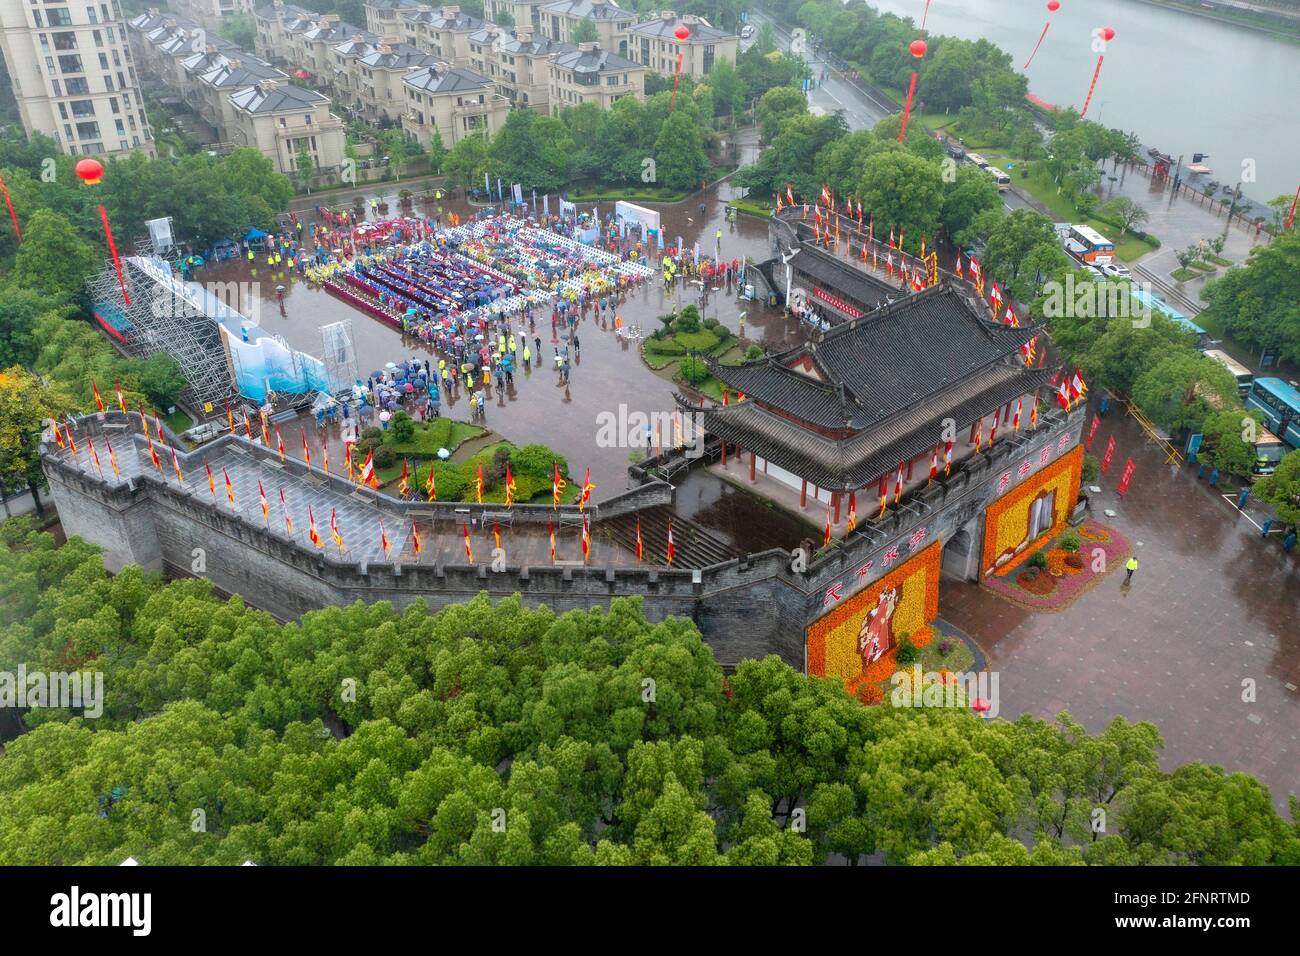 NINGBO, CINA - 19 MAGGIO 2021 - Foto aerea mostra il lancio della stagione estiva di promozione viaggi su strada in Cina a Ninghai, luogo di nascita della giornata turistica cinese, a Ningbo, provincia di Zhejiang, Cina, 19 maggio, 2021. Oggi è la Giornata del Turismo della Cina. (Foto di Guanghui GU / Costfoto/Sipa USA) Foto Stock